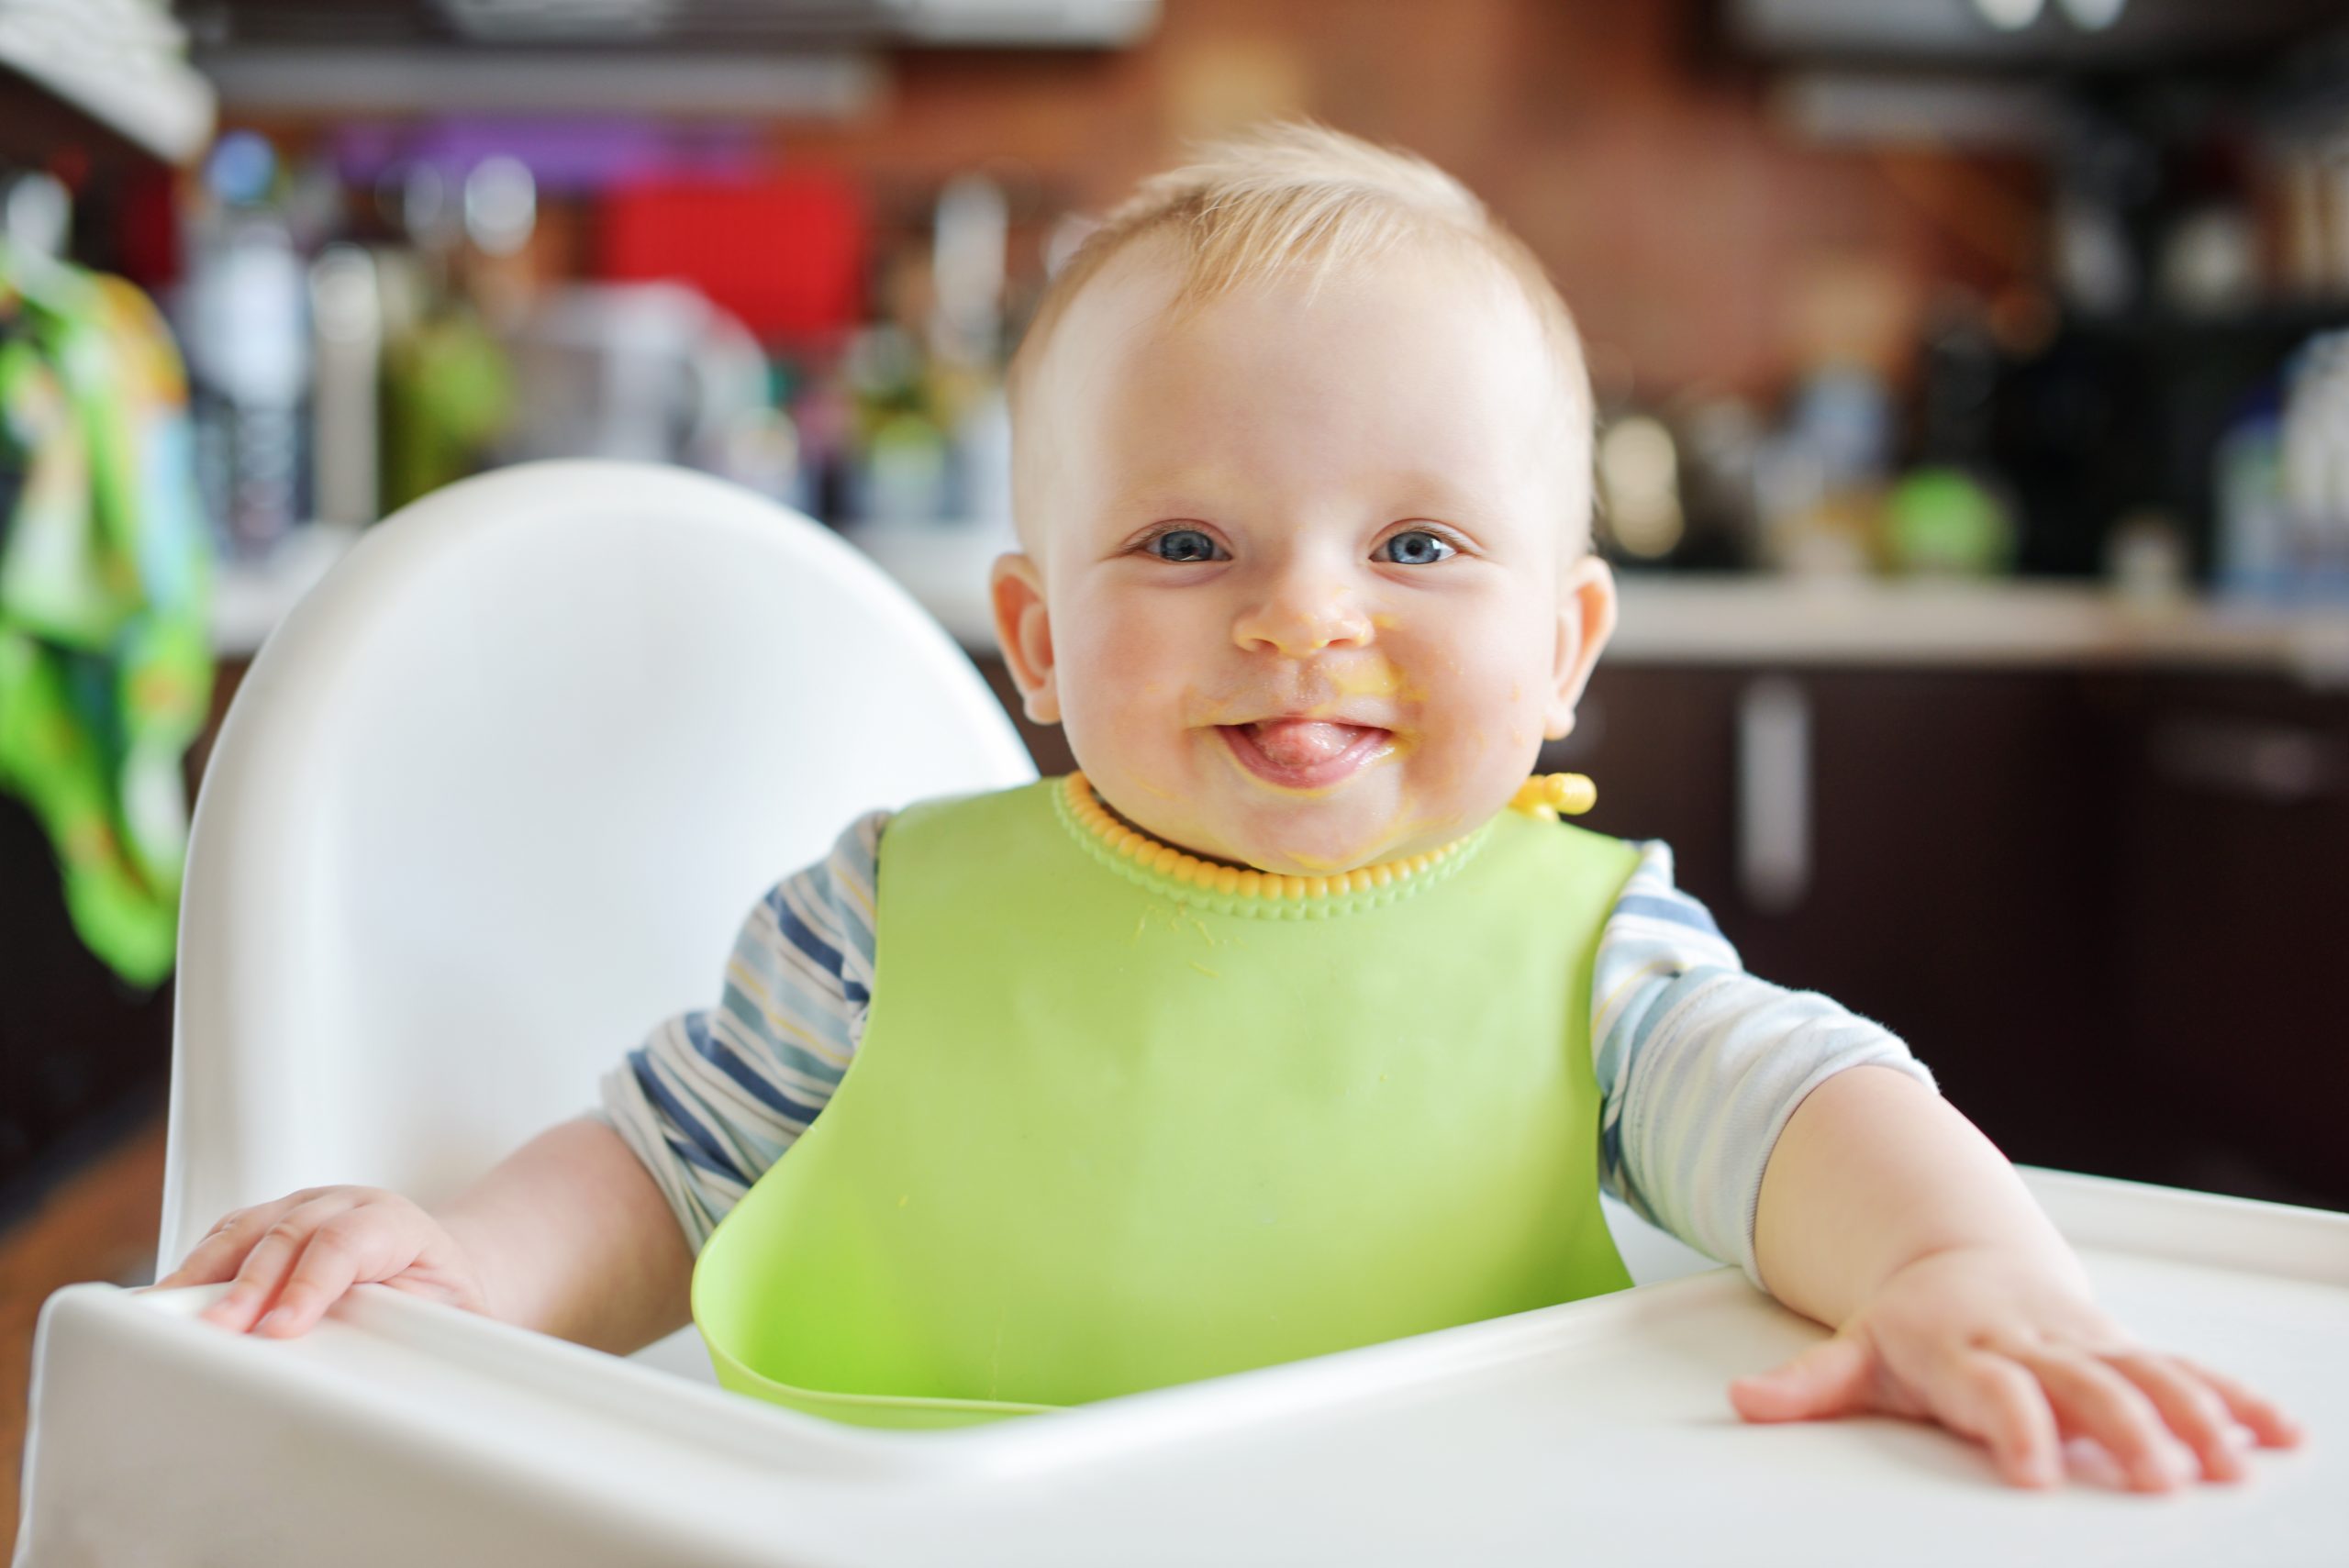 6 Aylık Bebek Beslenmesi Hakkında Tüm Merak Edilenler cicicocuk